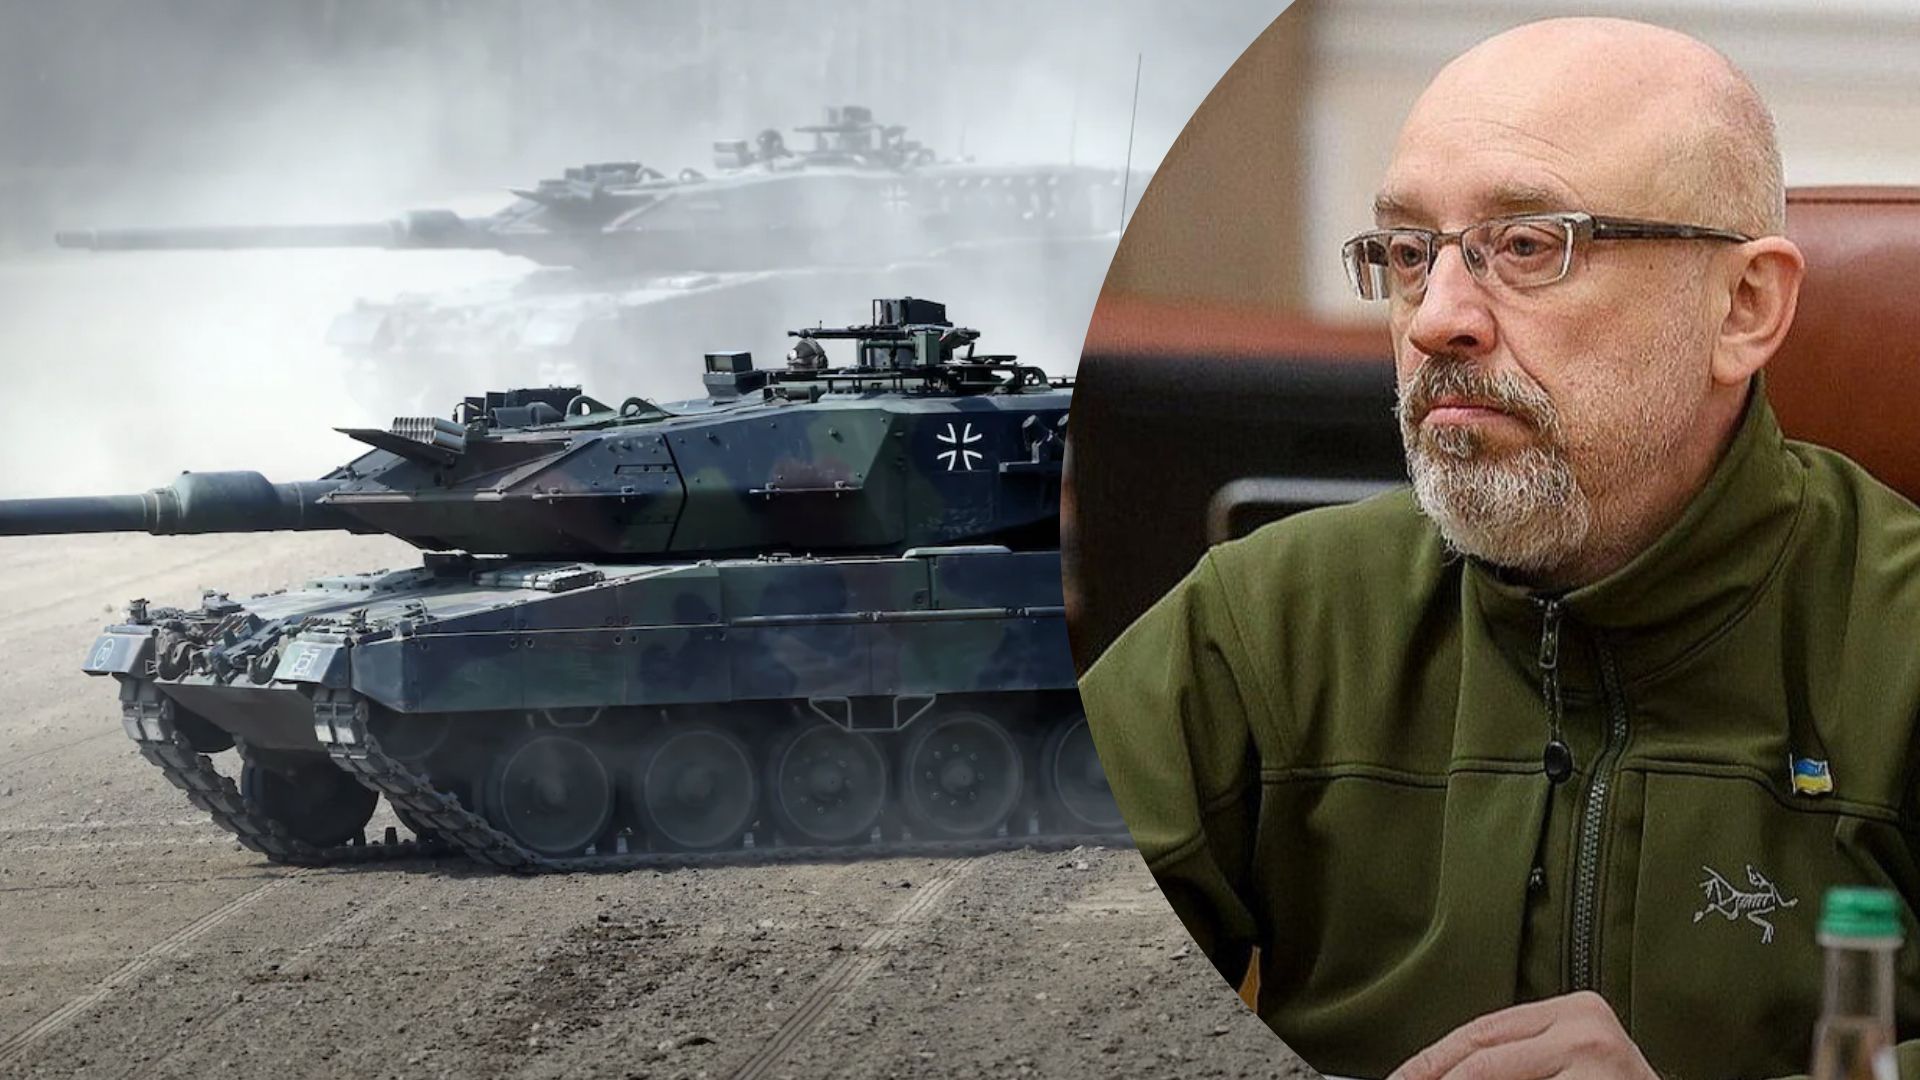 Leopard 2 для Украины - Резников анонсировал хорошие новости для украинской армии